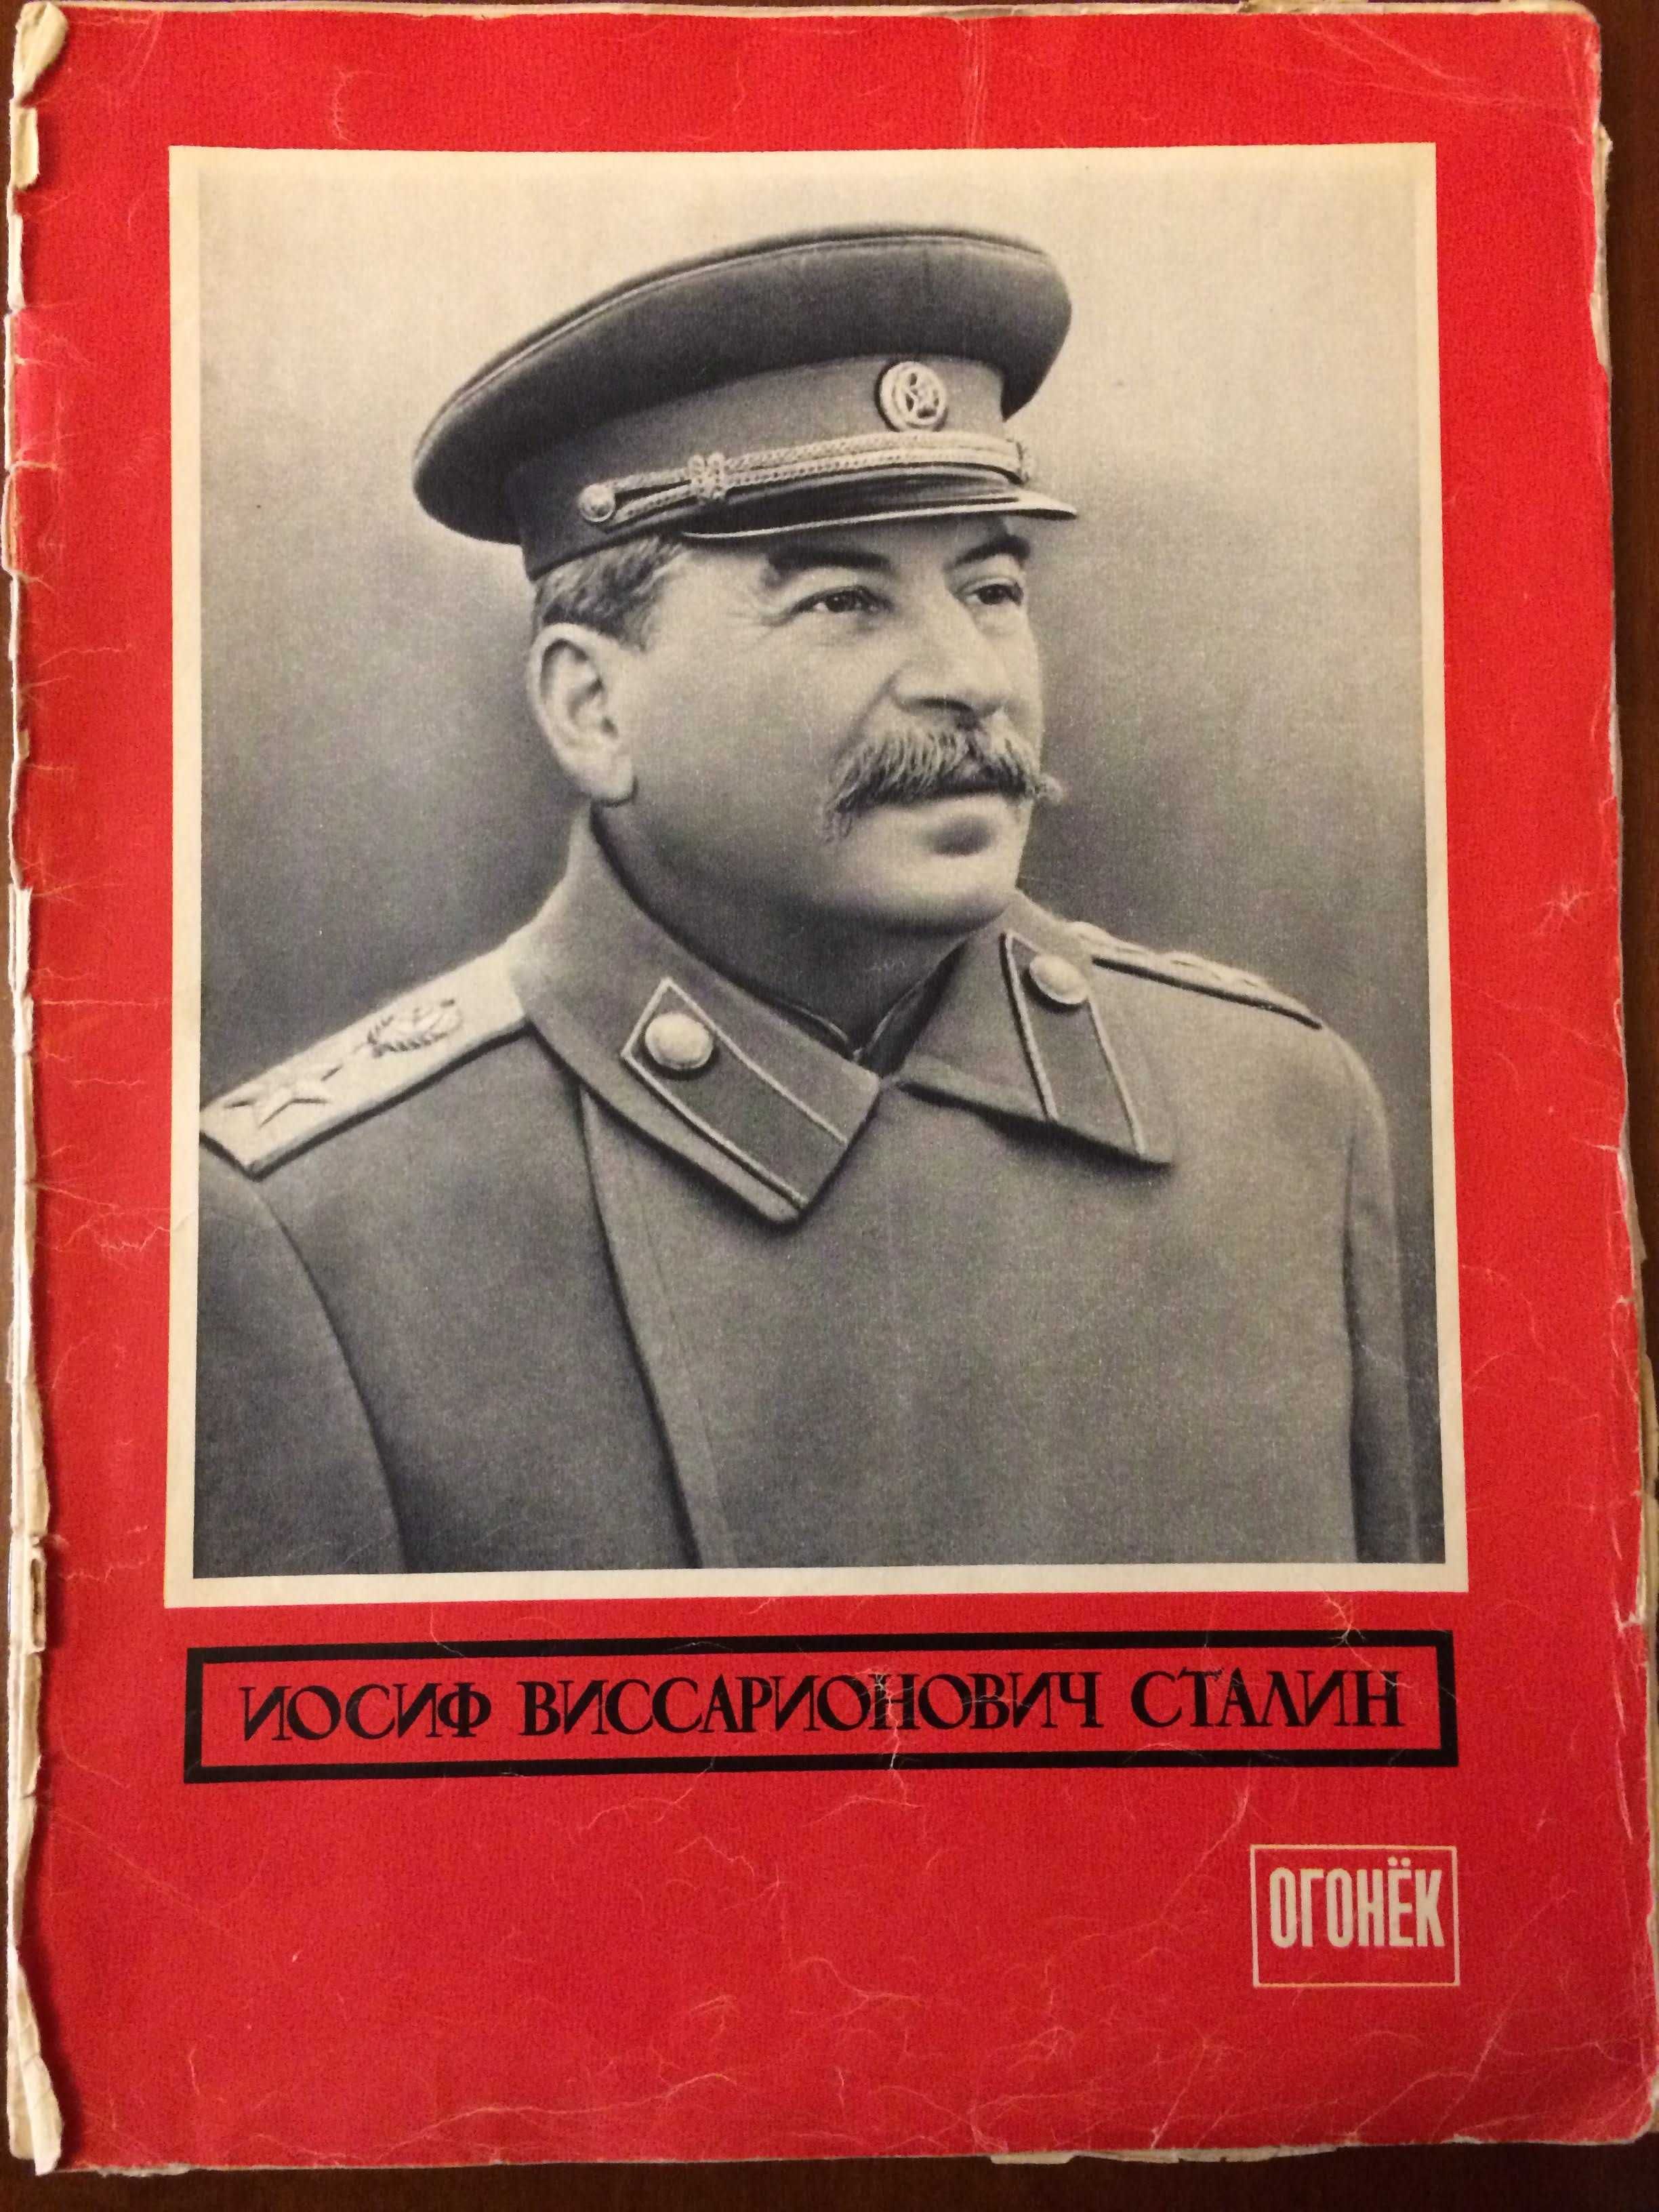 Журнал "Огонек" от 15 марта 1953 года Сталин №11 (1344) СССР